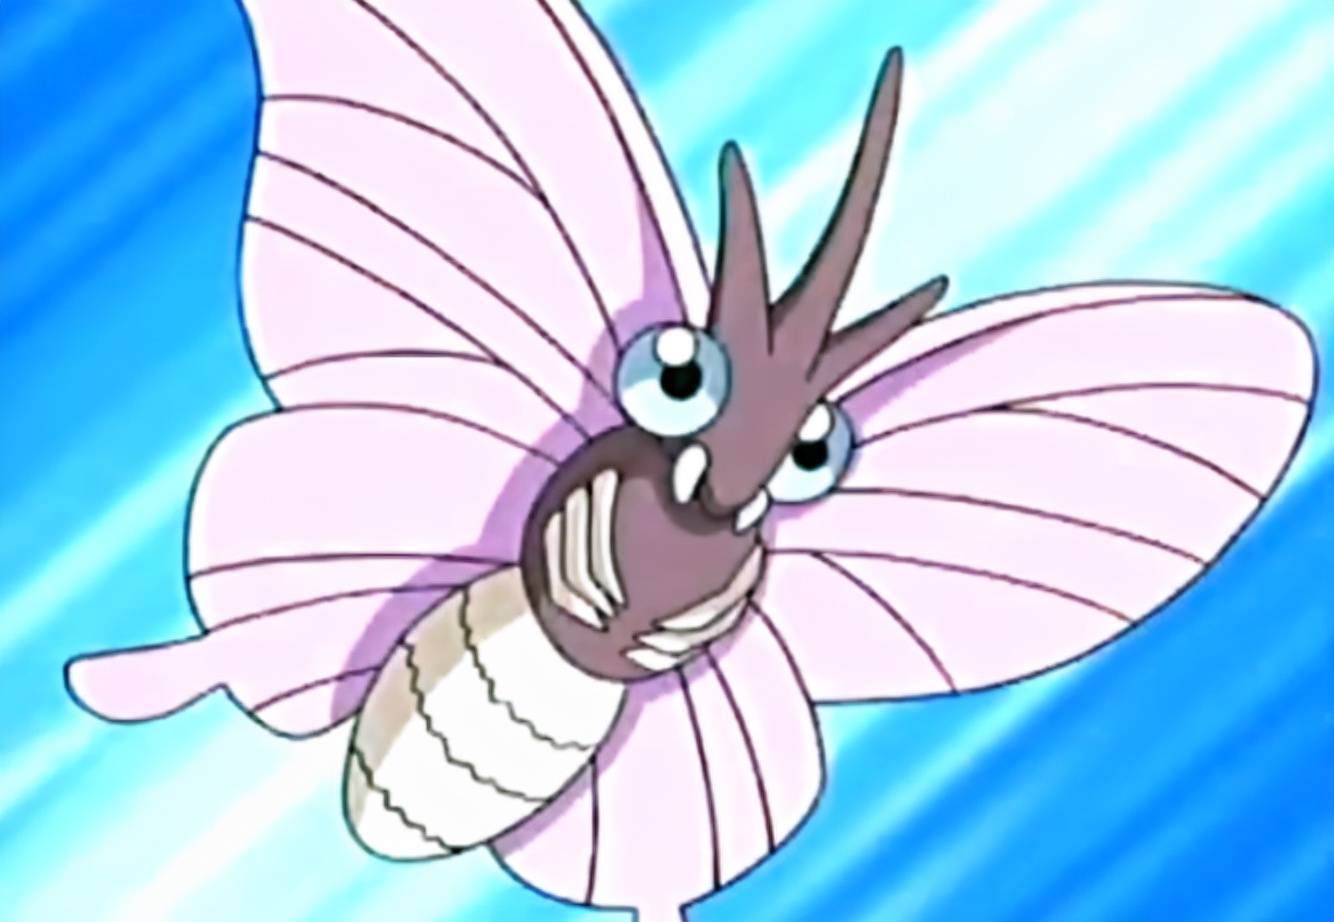 摩鲁蛾虽然叫做蛾,但实际上根据其体态来看其身上有